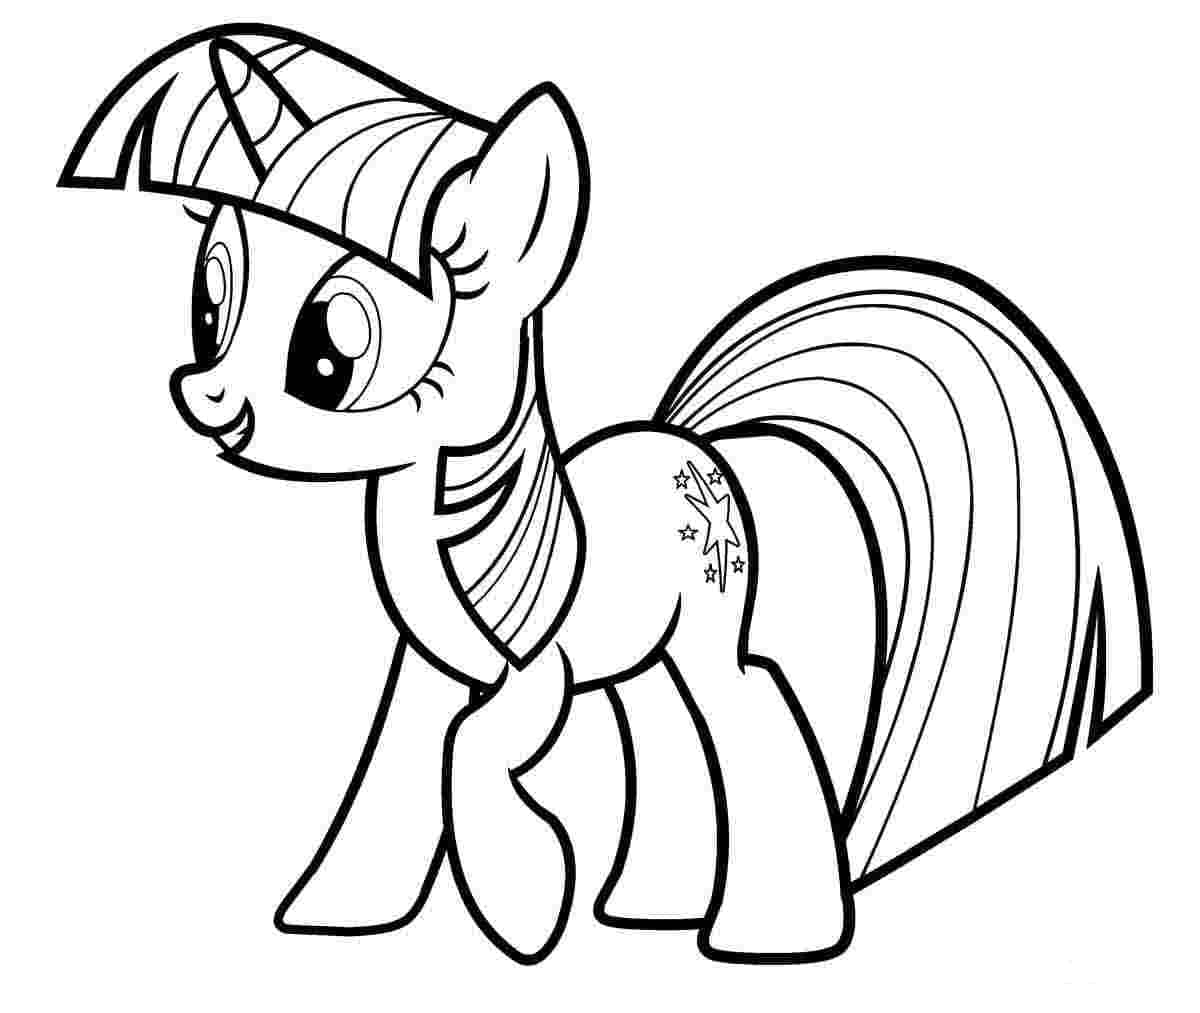 Con ngựa Pony cổ Tích Clip nghệ thuật  vẽ cầu vồng khóa hình ảnh miễn phí  png tải về  Miễn phí trong suốt Dòng png Tải về